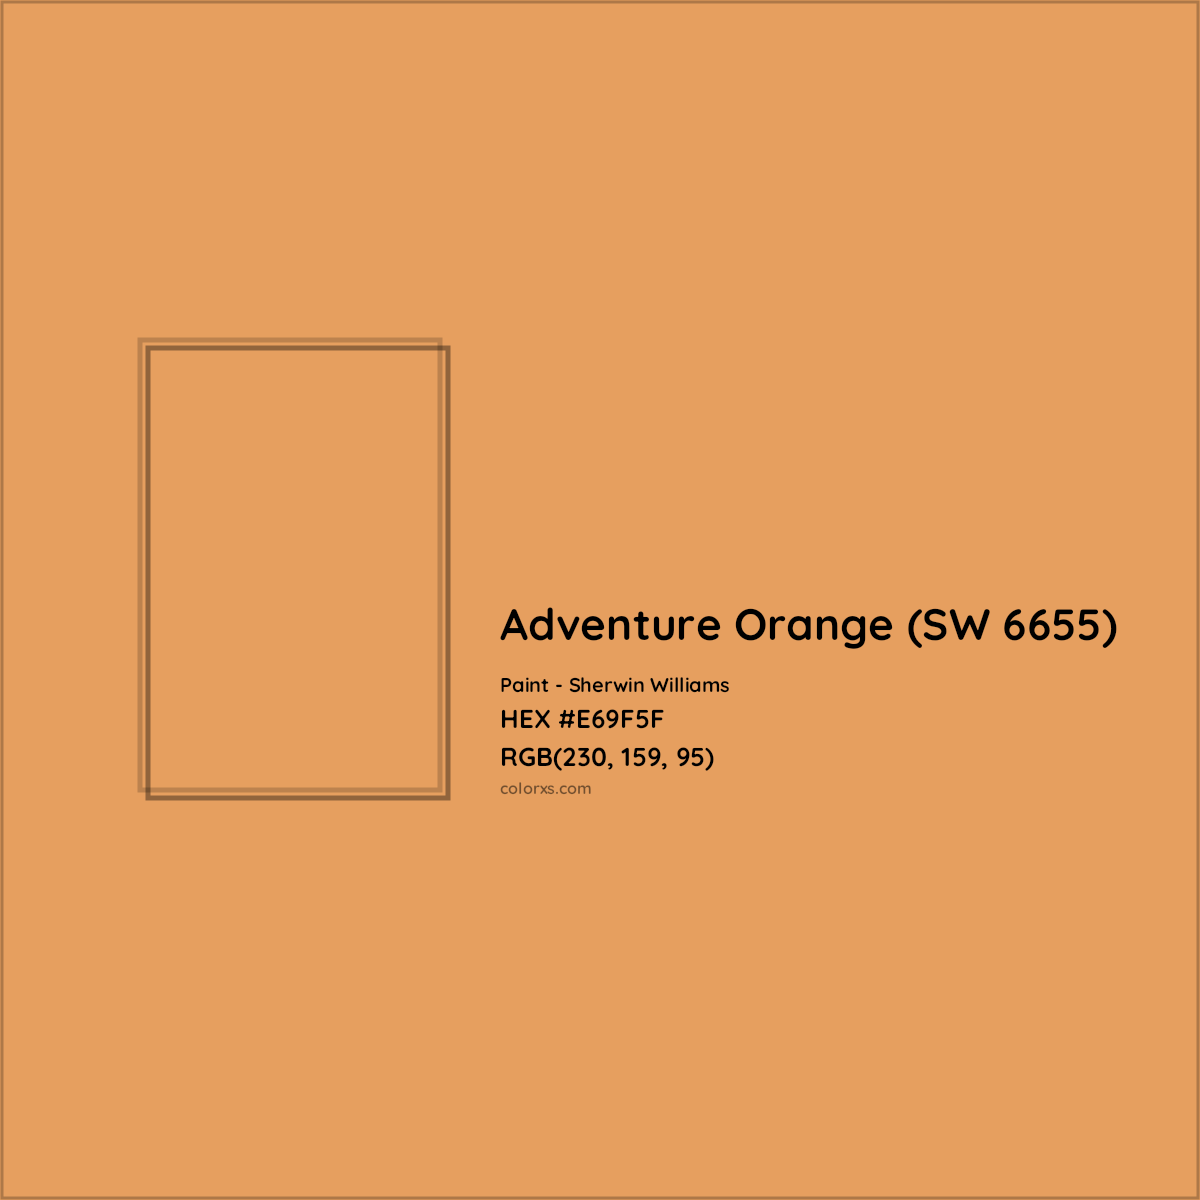 HEX #E69F5F Adventure Orange (SW 6655) Paint Sherwin Williams - Color Code